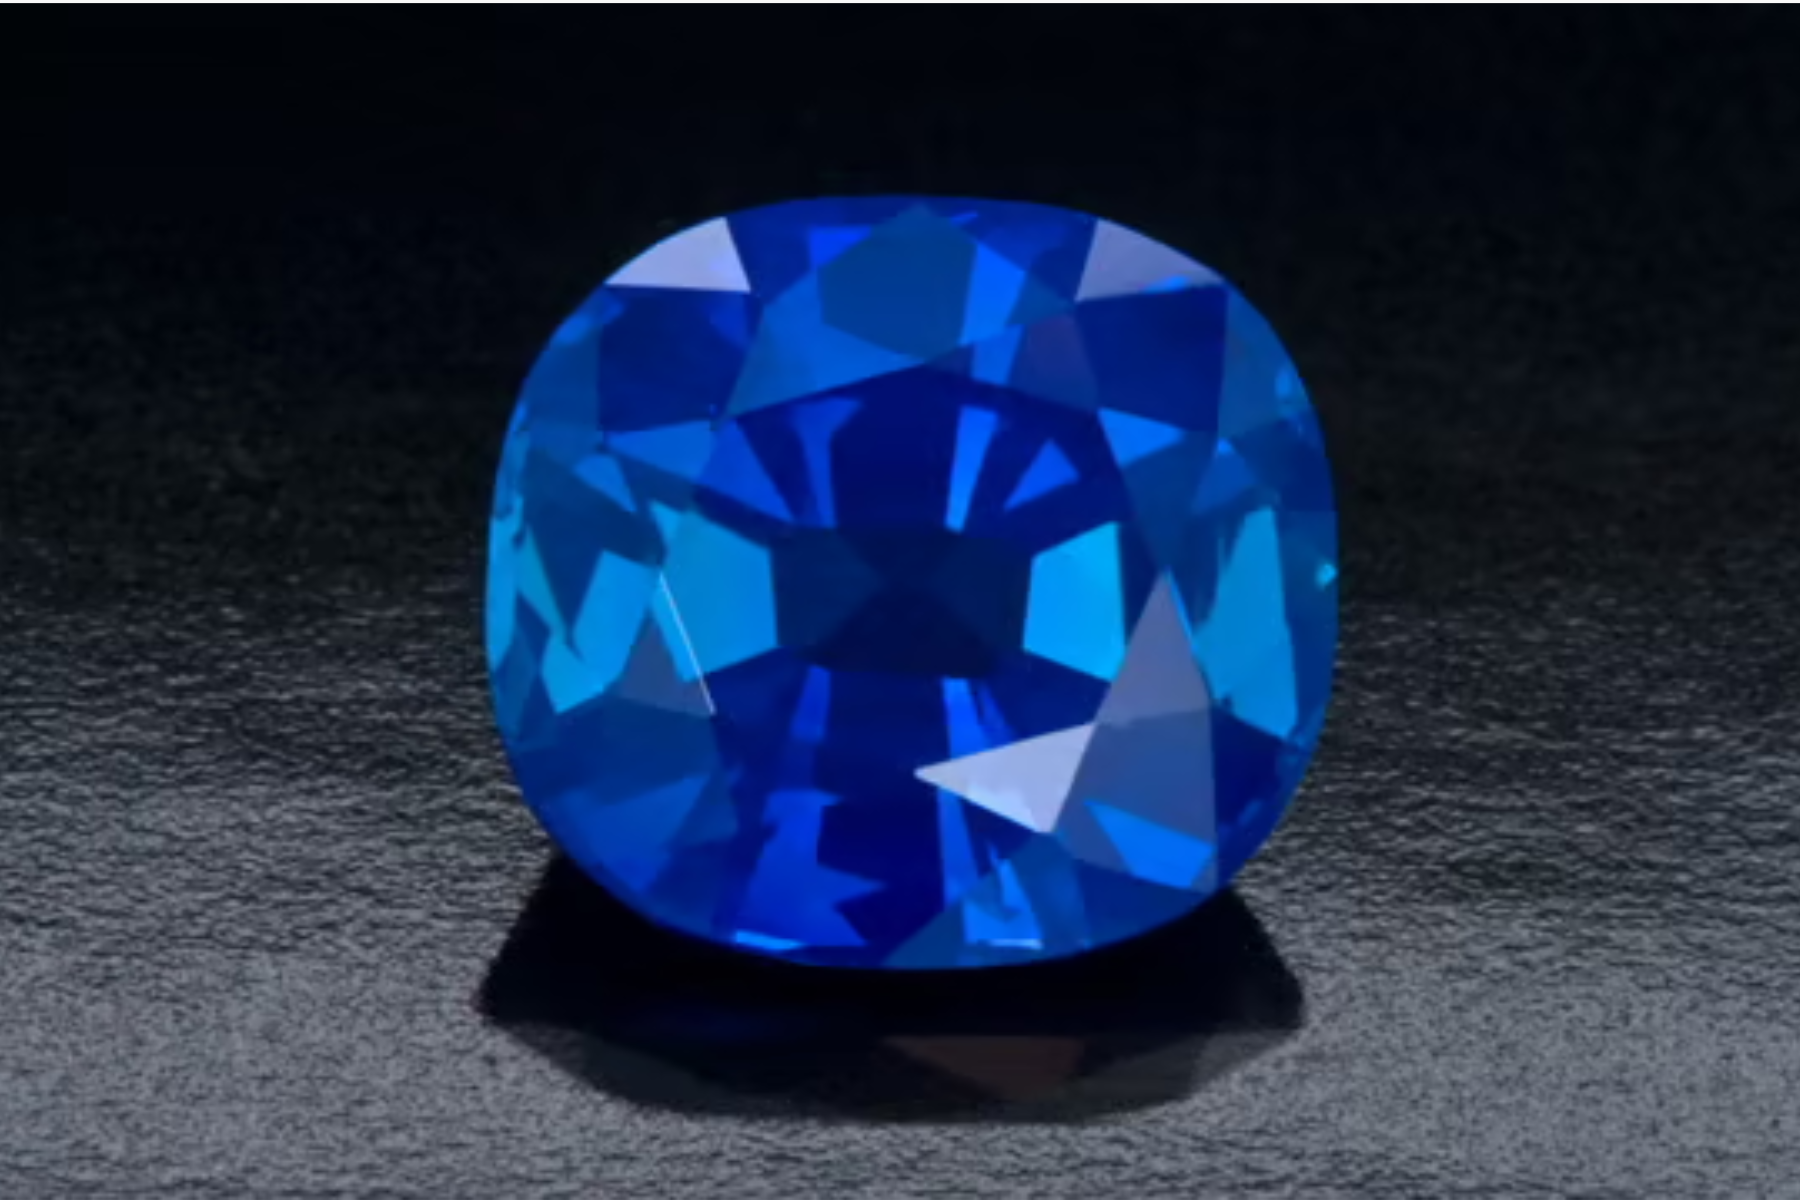 A Unique Collection Of Blue "Rough" Gemstones